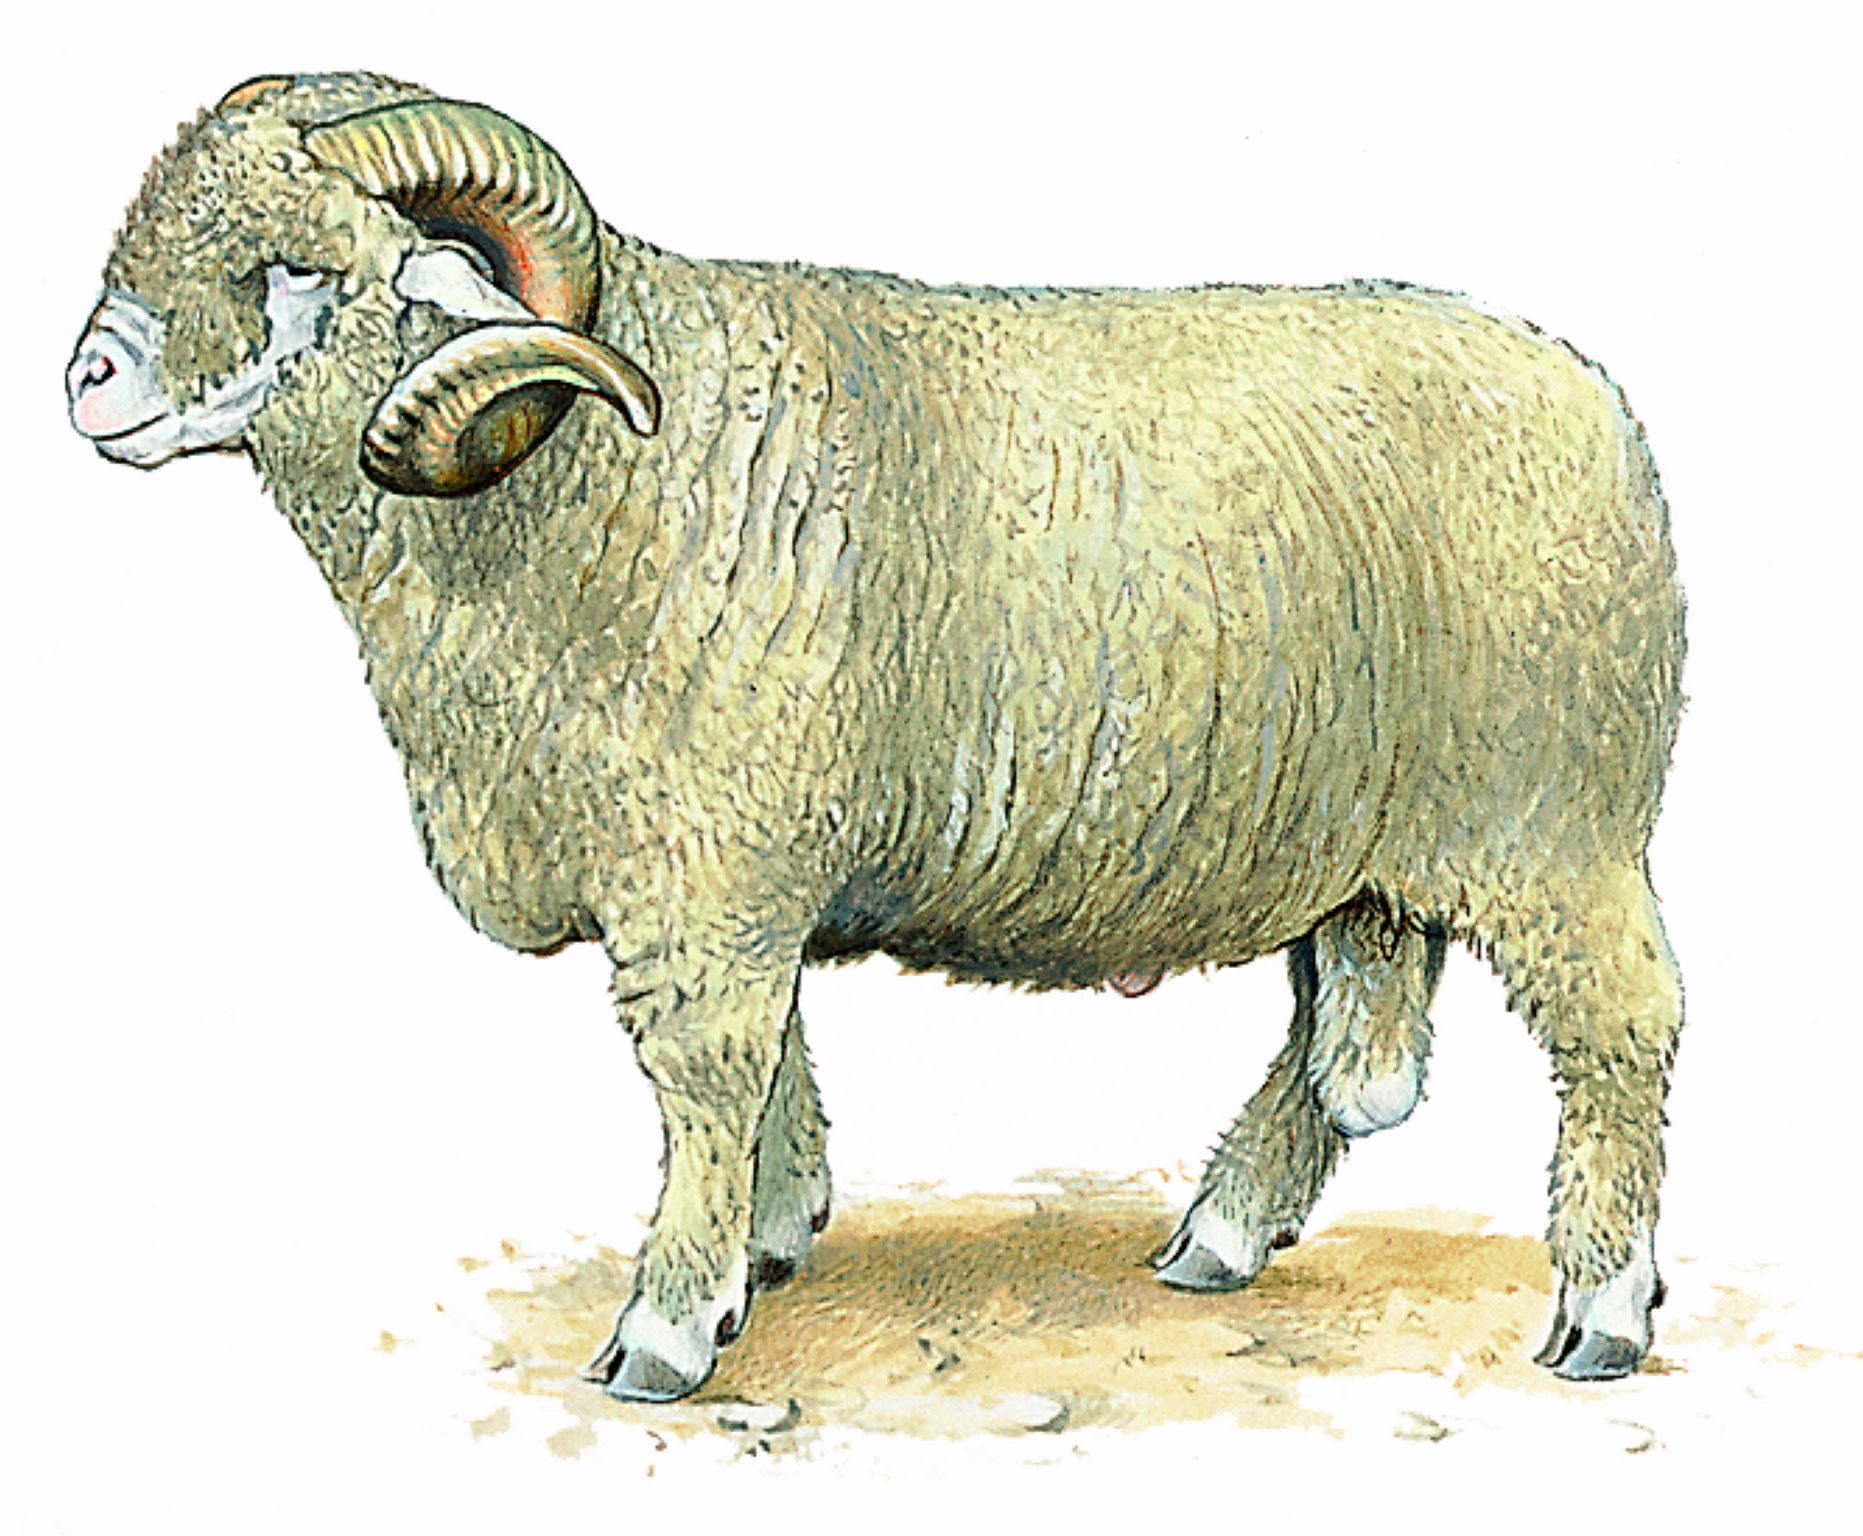 un mouton mérinos (cette race ovine produit une laine de grande qualité)